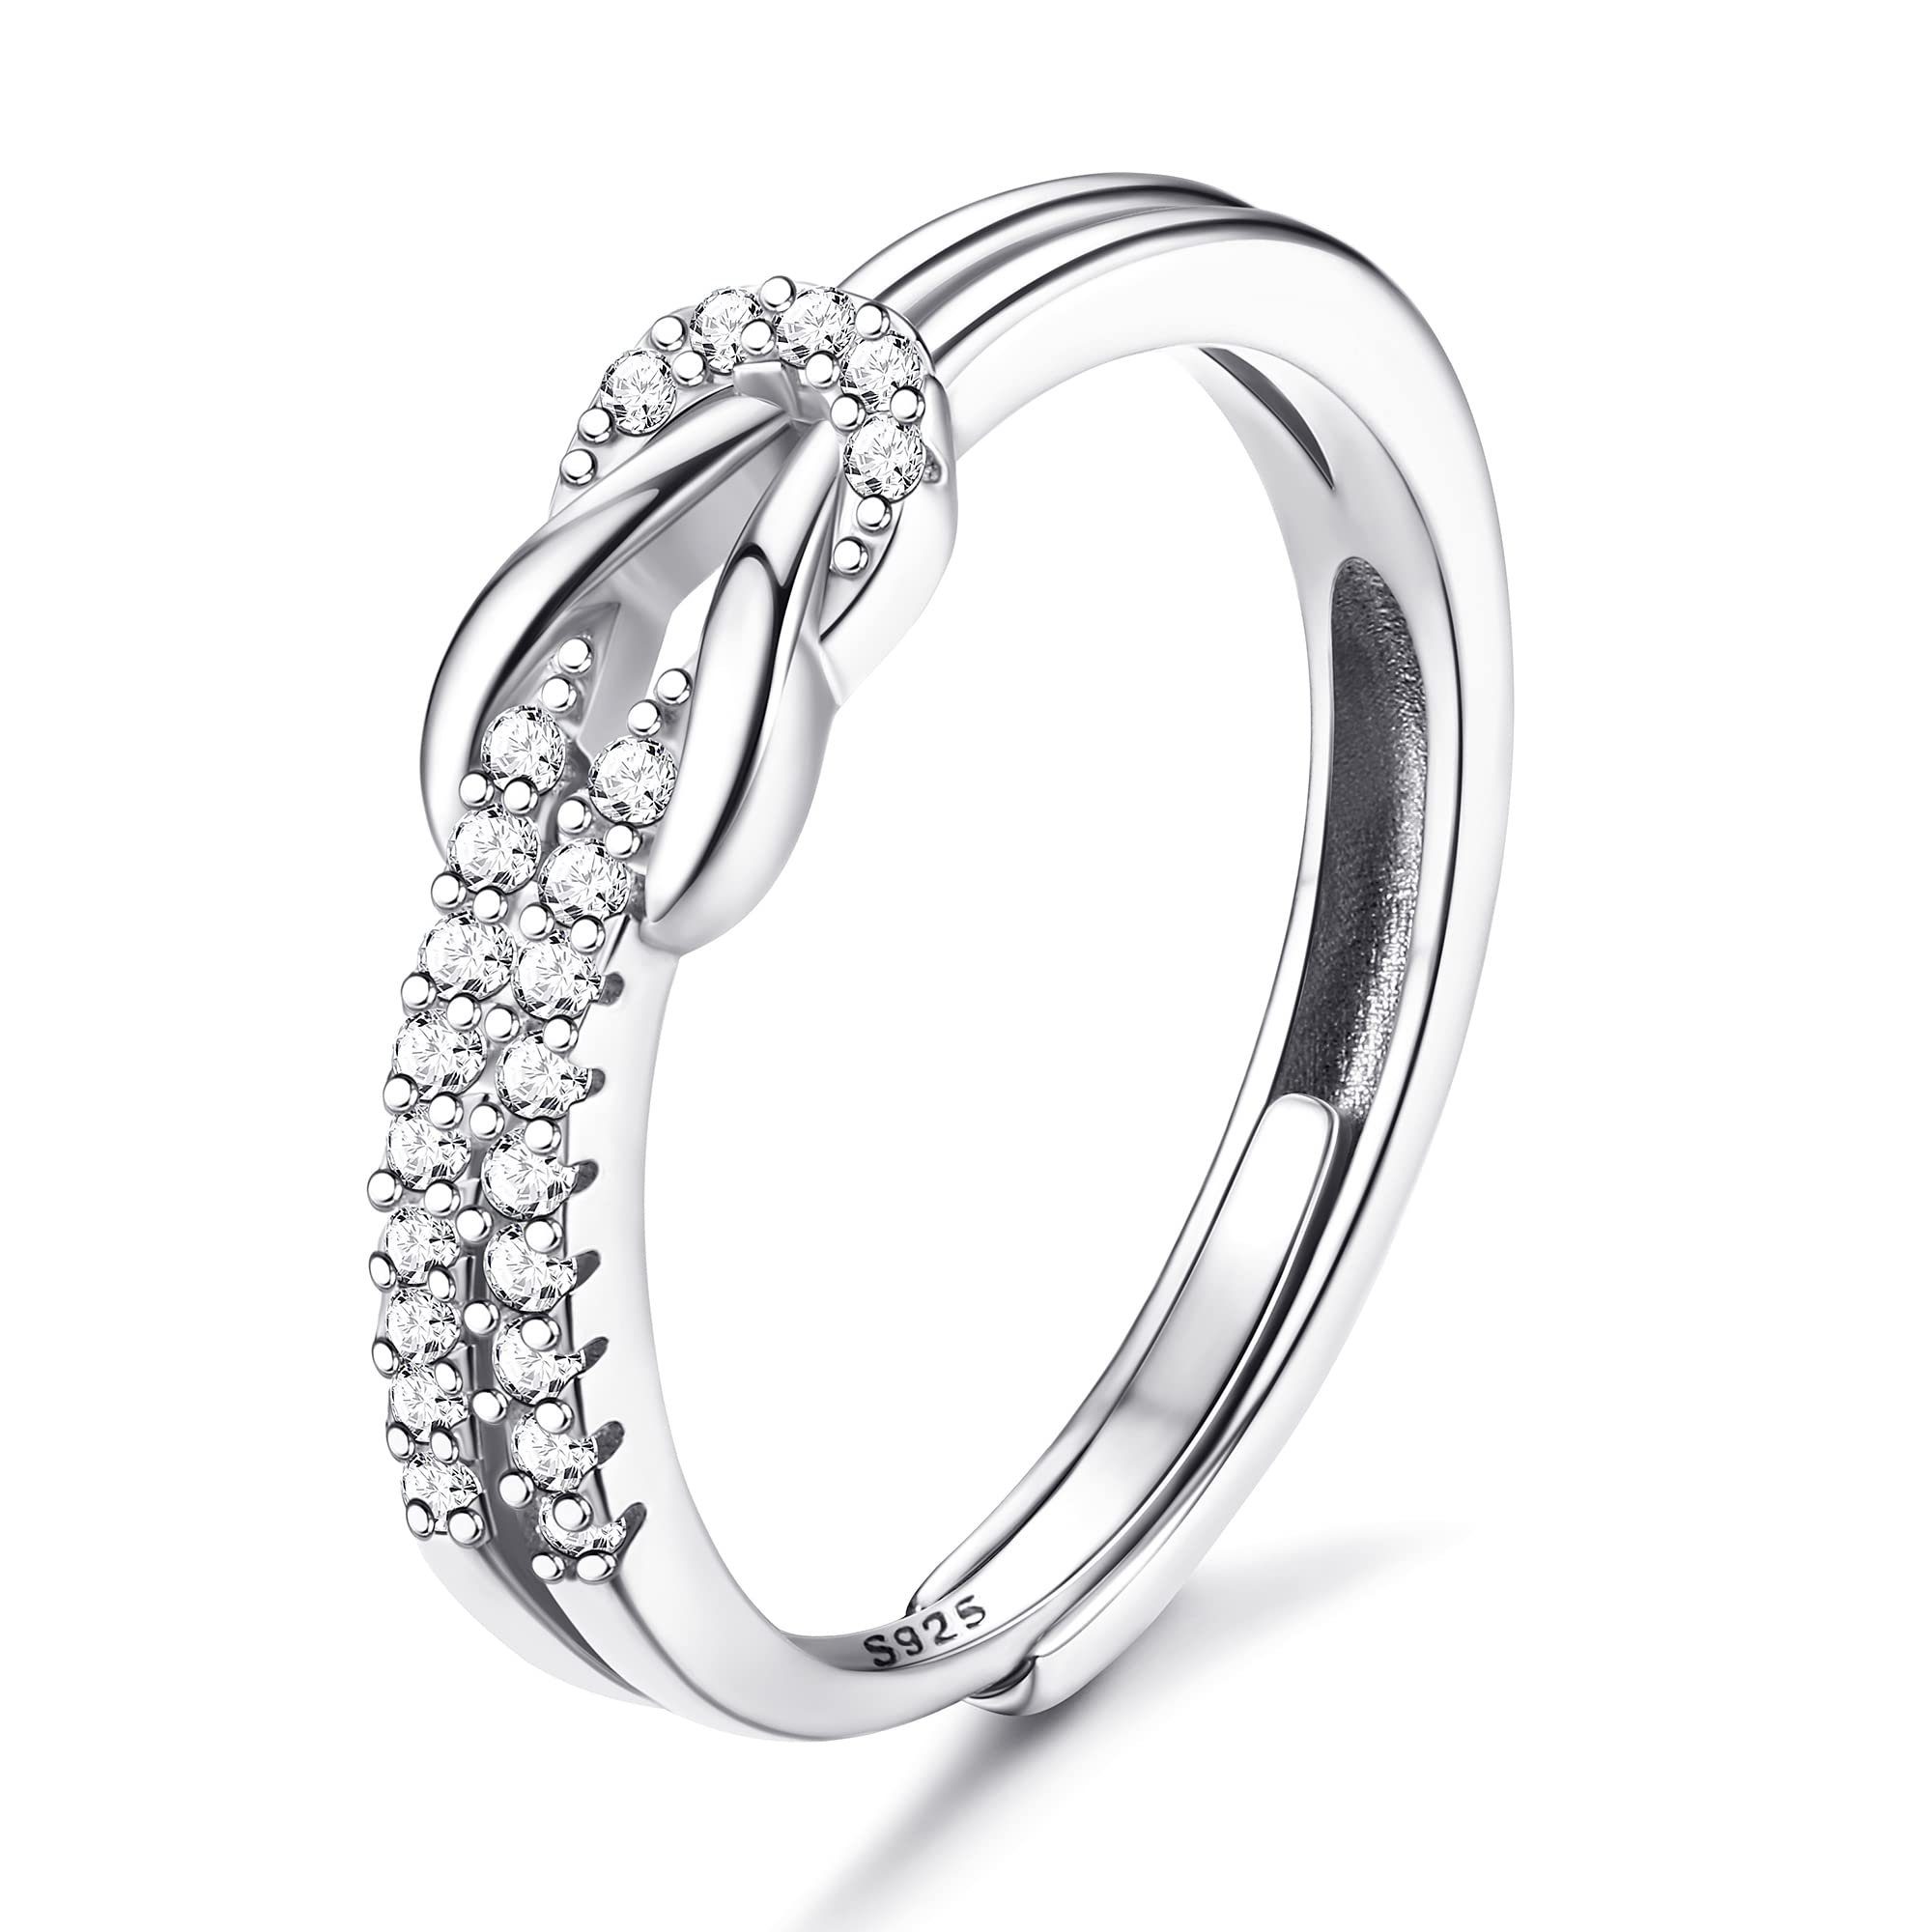 POCHUMIDUU Fingerring Twisted Set Diamanten offen Schößchen Ring weibliche Mode Temperament, Silberschmuck für Frauen aus 925er Sterlingsilber